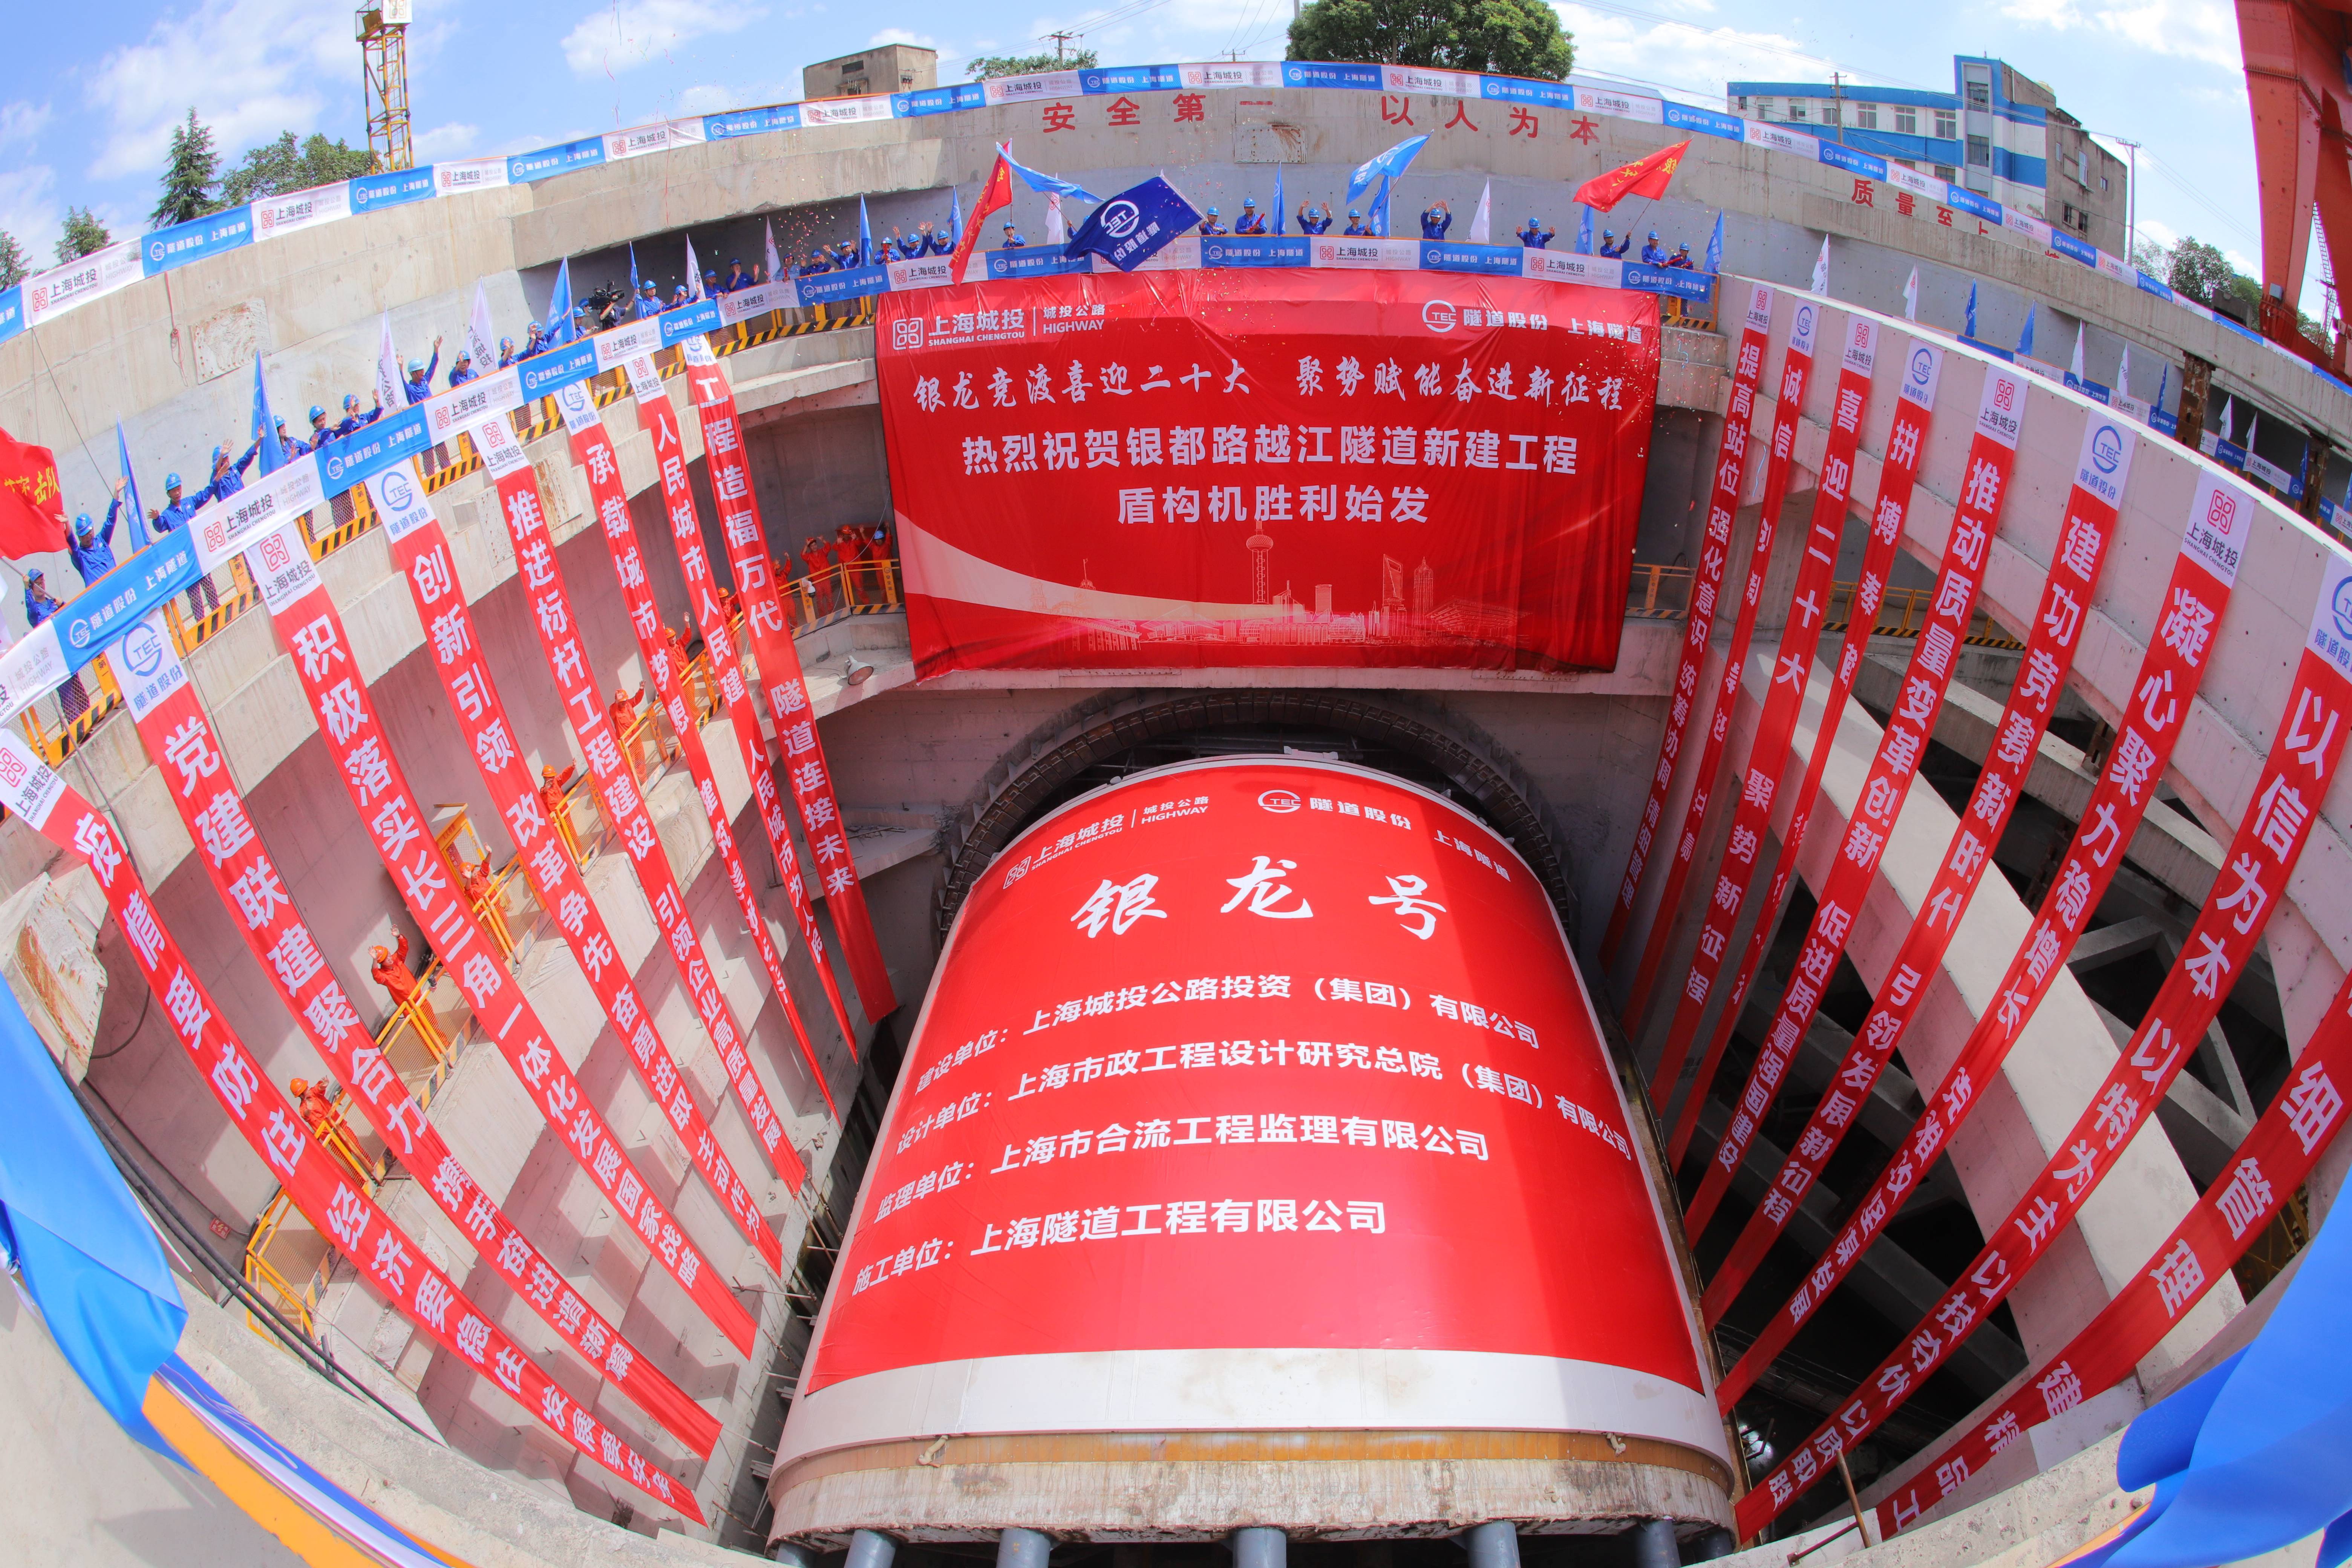 上海银都路越江隧道进入施工新阶段